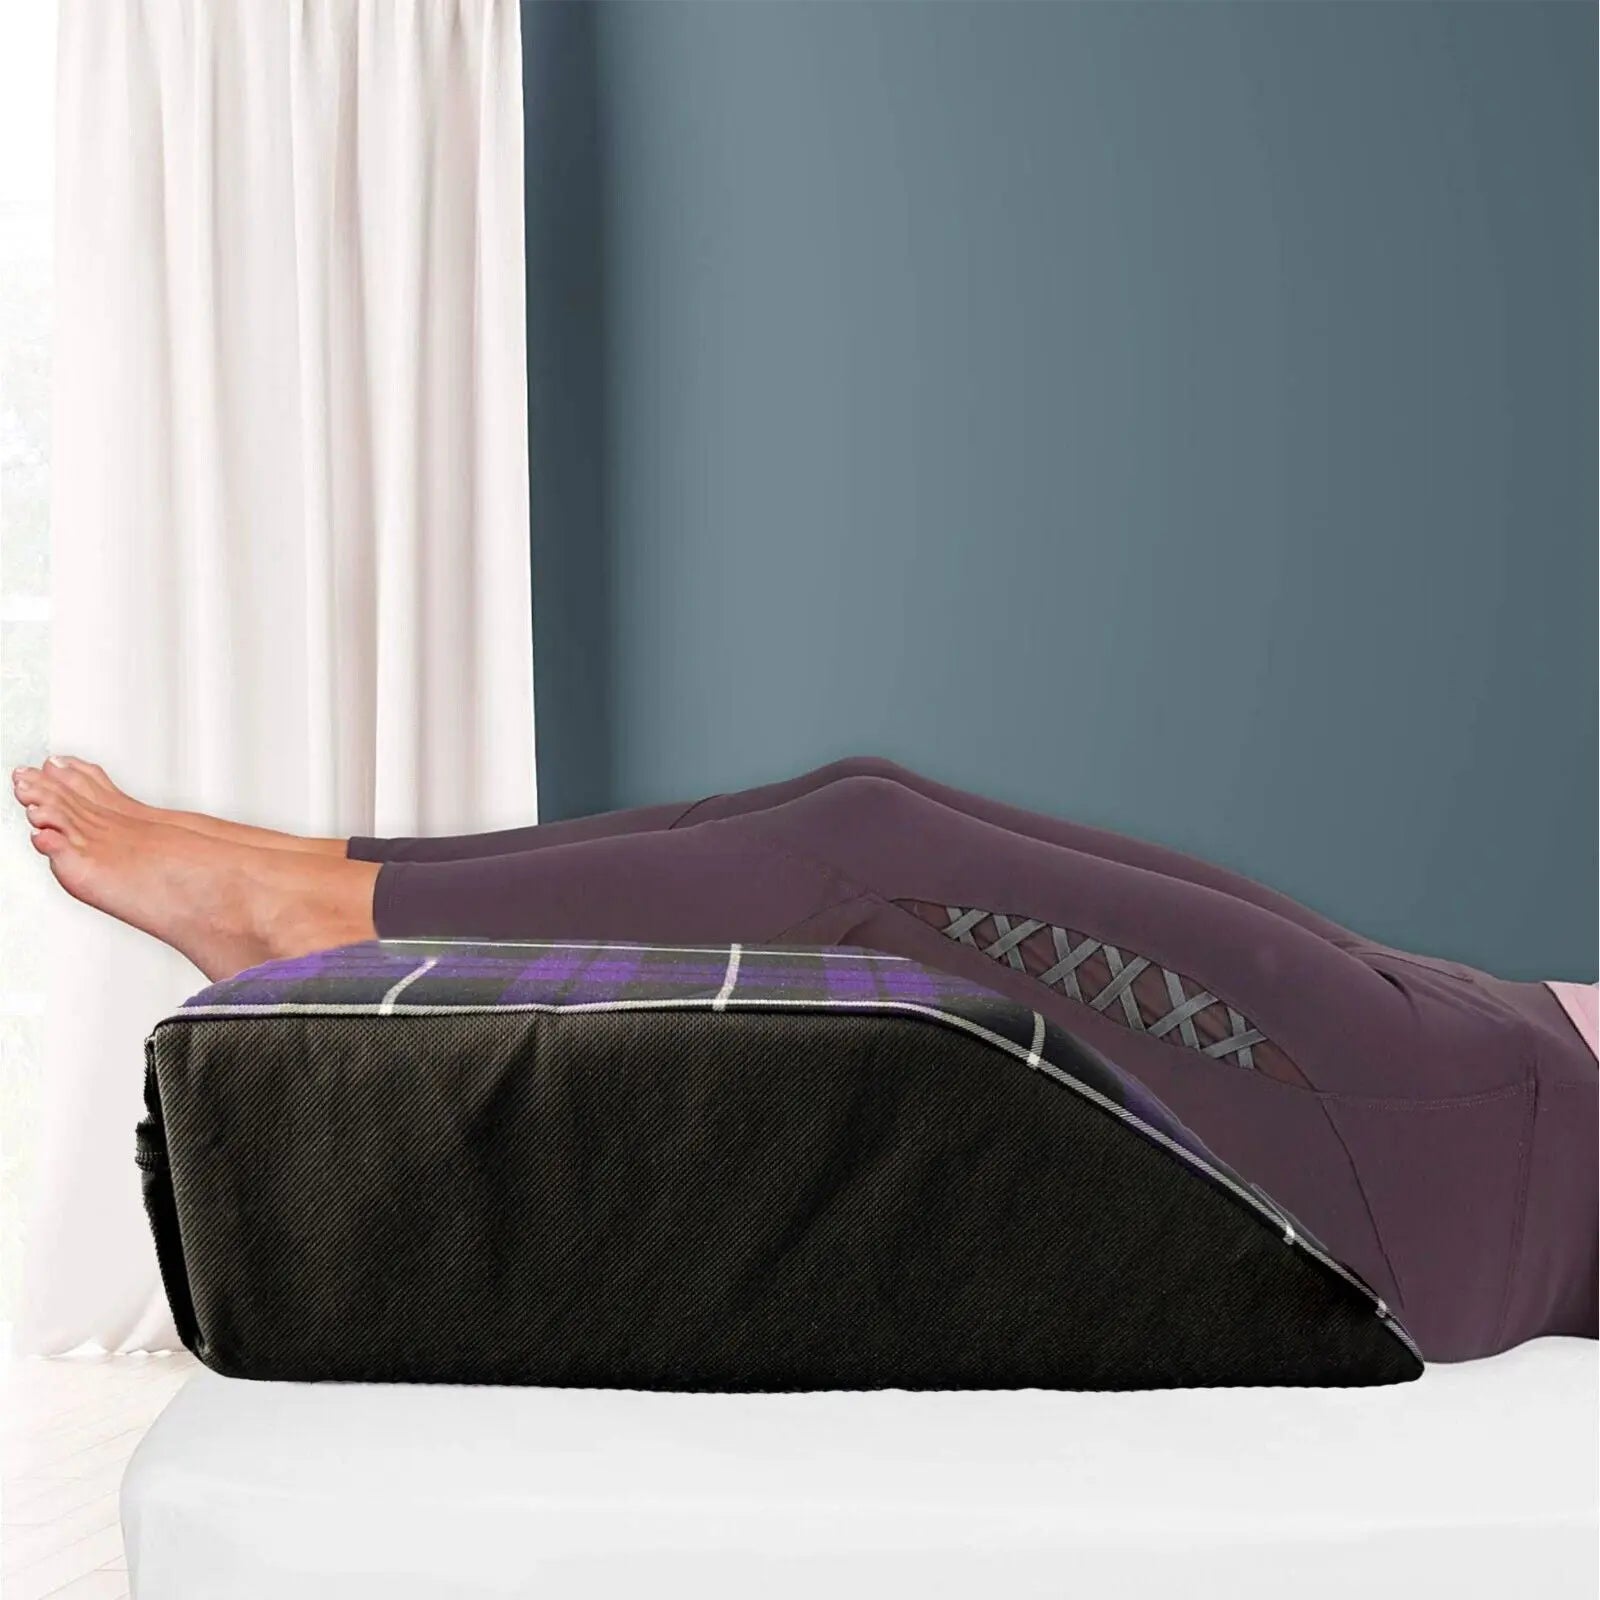 Tartan Designs Leg Pillow Elevating Wedge Foam Rest Pillow Back Hip Knee Support - Beach Stone